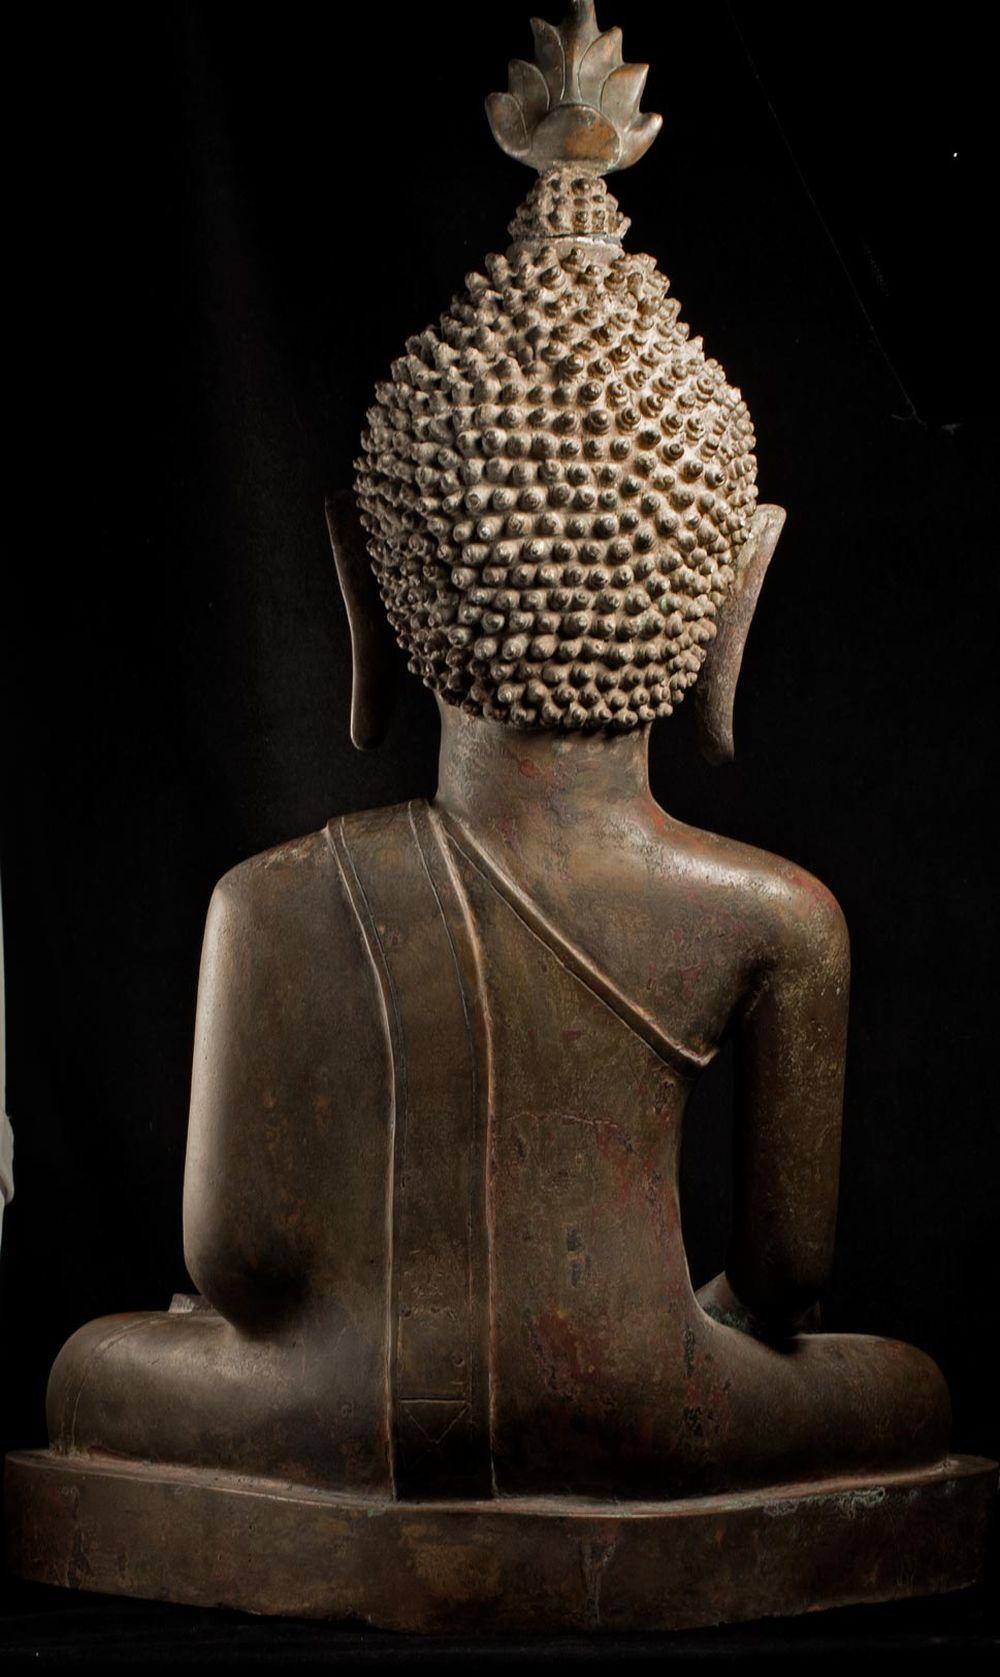 Grand royaume de Bouddha en bronze du 18/19e siècle de Nan dans le nord-est de la Thaïlande - 8961 5